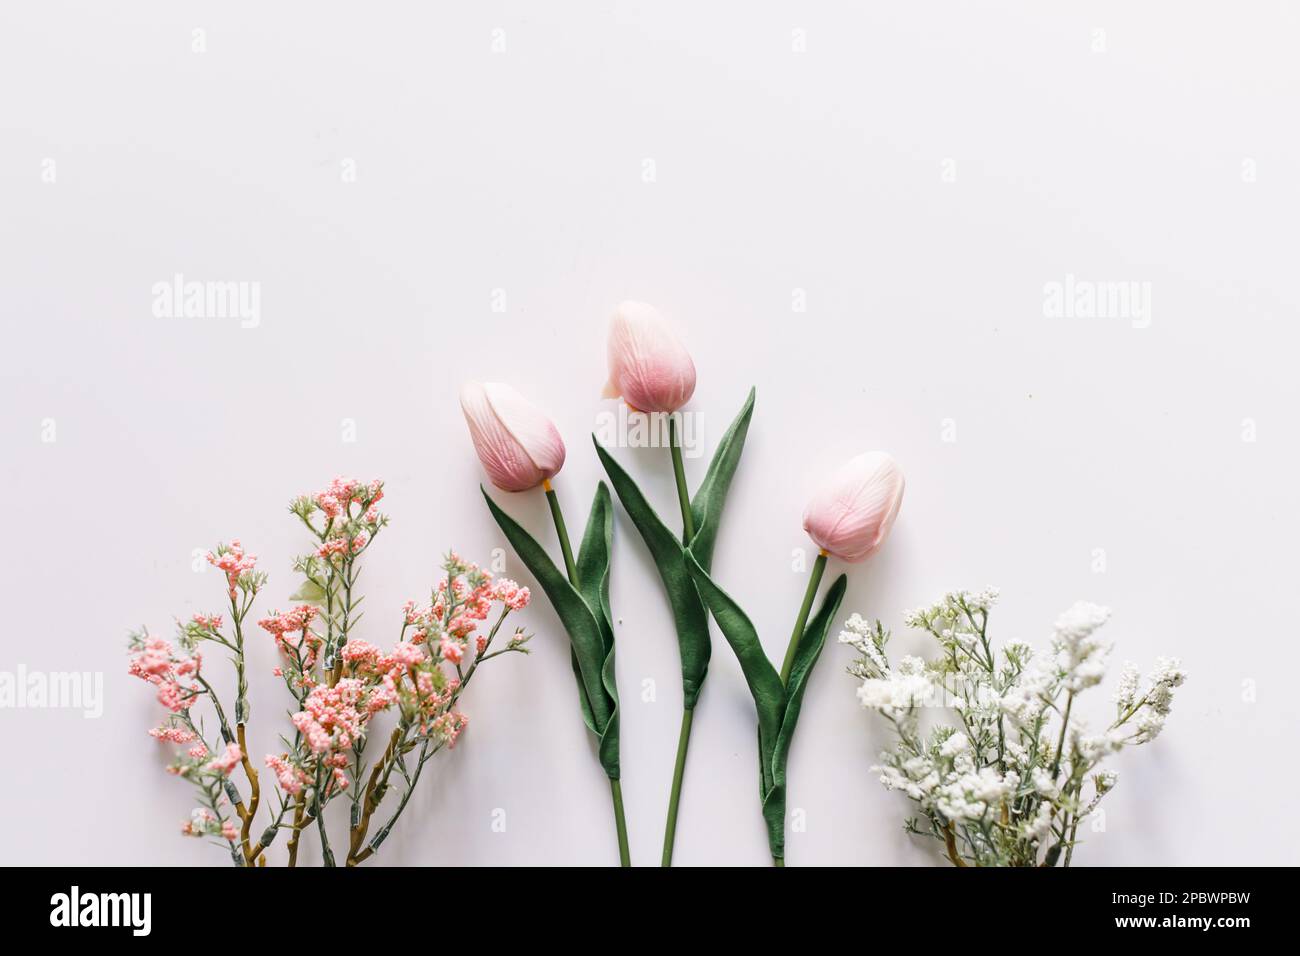 Eine Auswahl an Frühlingsblumen mit Weiß-, Rosa- und Grüntönen Stockfoto